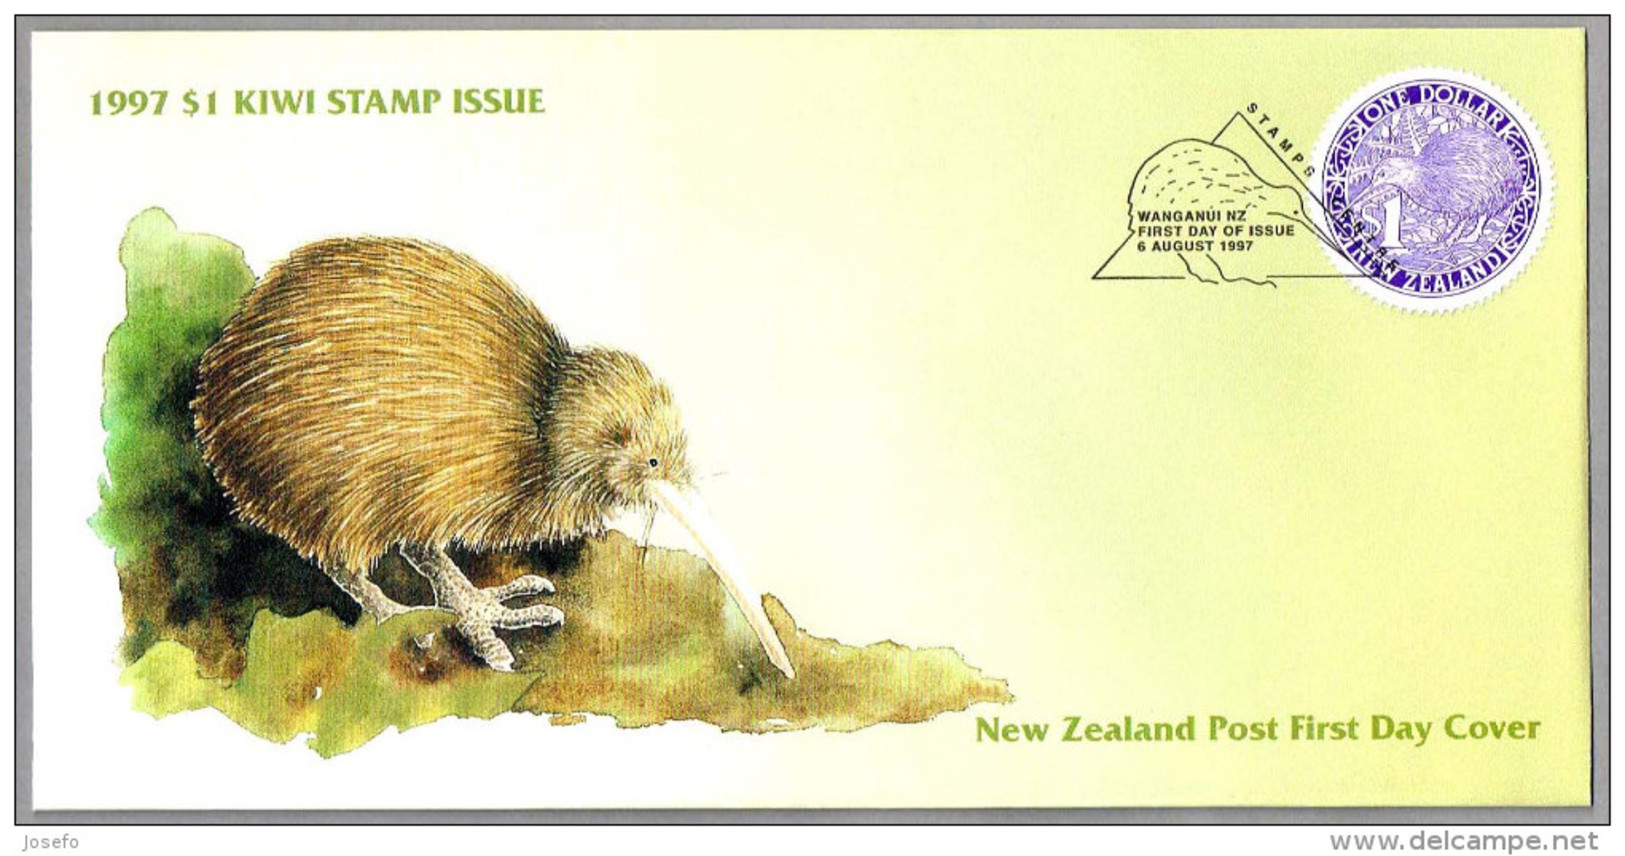 1997 $ 1 KIWI STAMP ISSUE. SPD/FDC Wanganui NZ 1997 - Kiwis